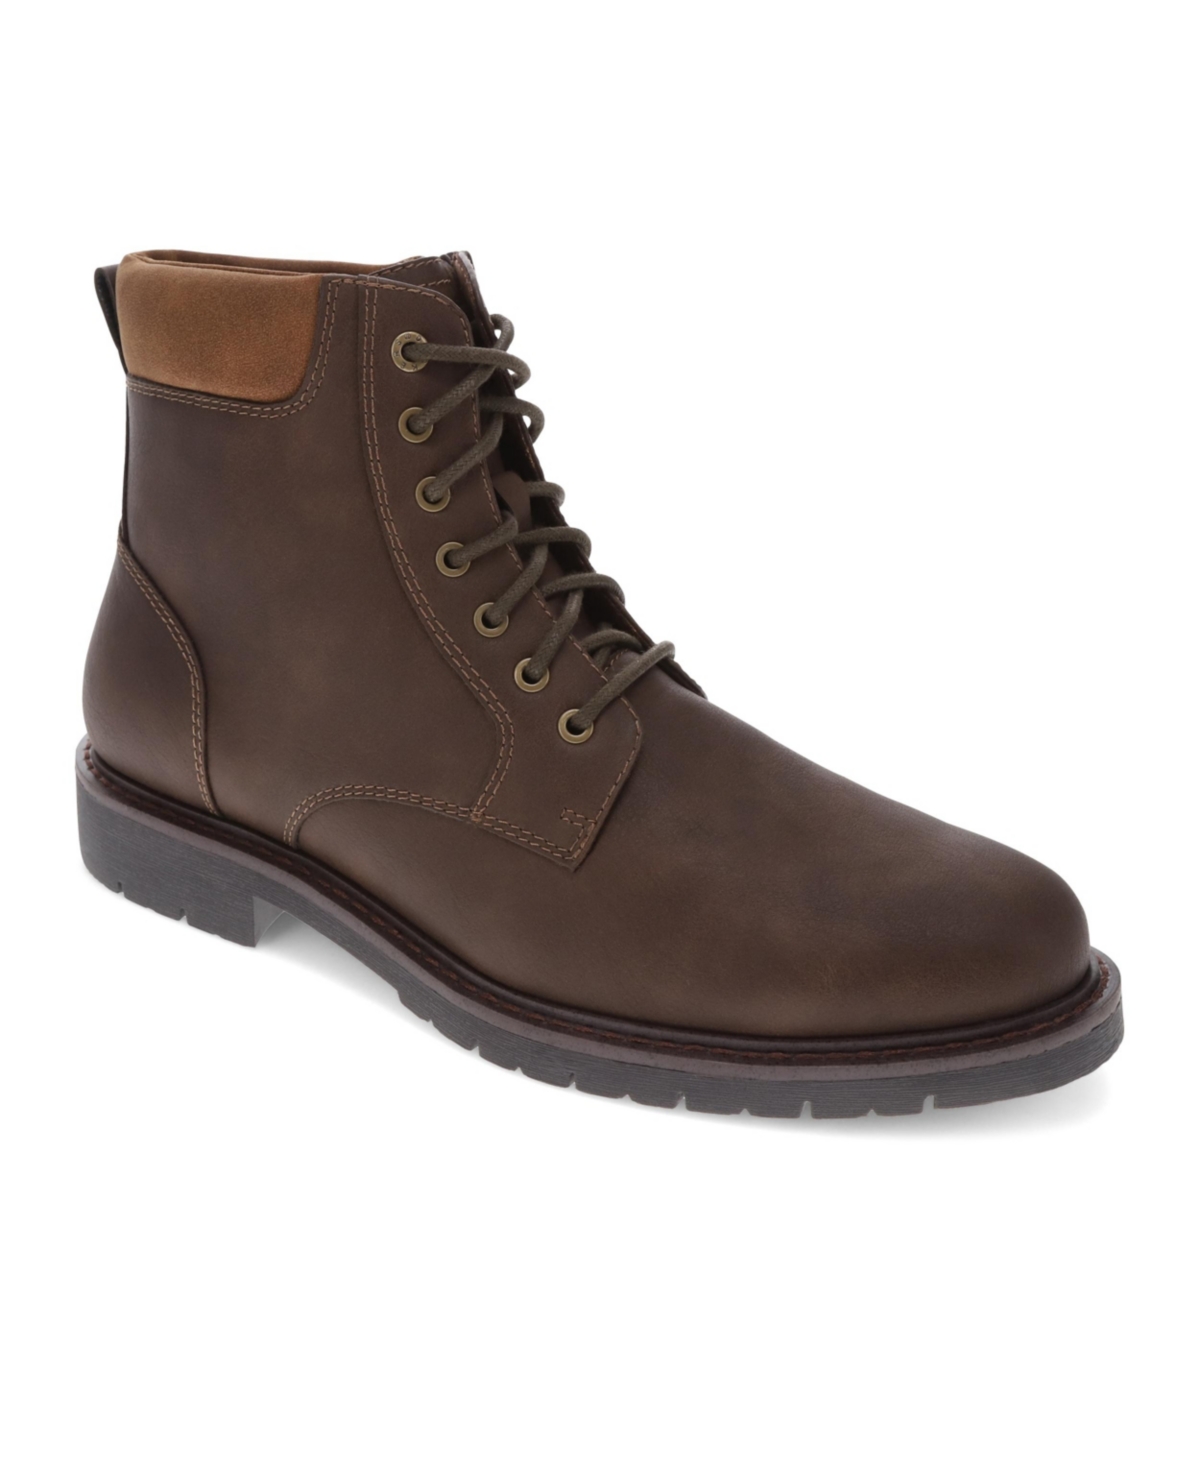 Men's Denver Casual Comfort Boots - Dark Brown